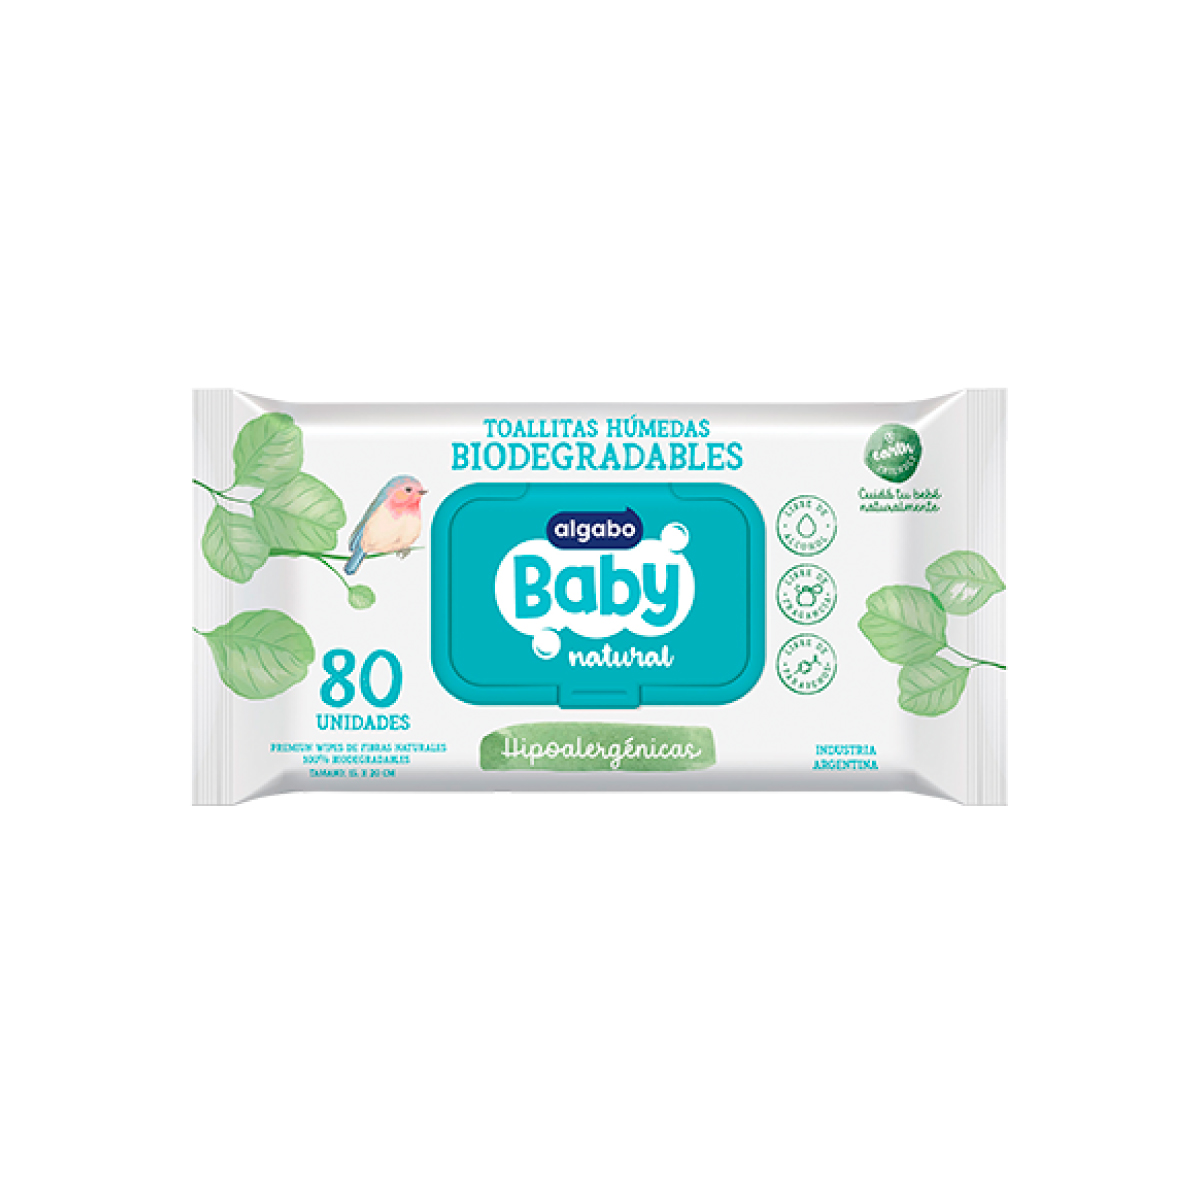 Comprar toallitas para bebés en farmacia online